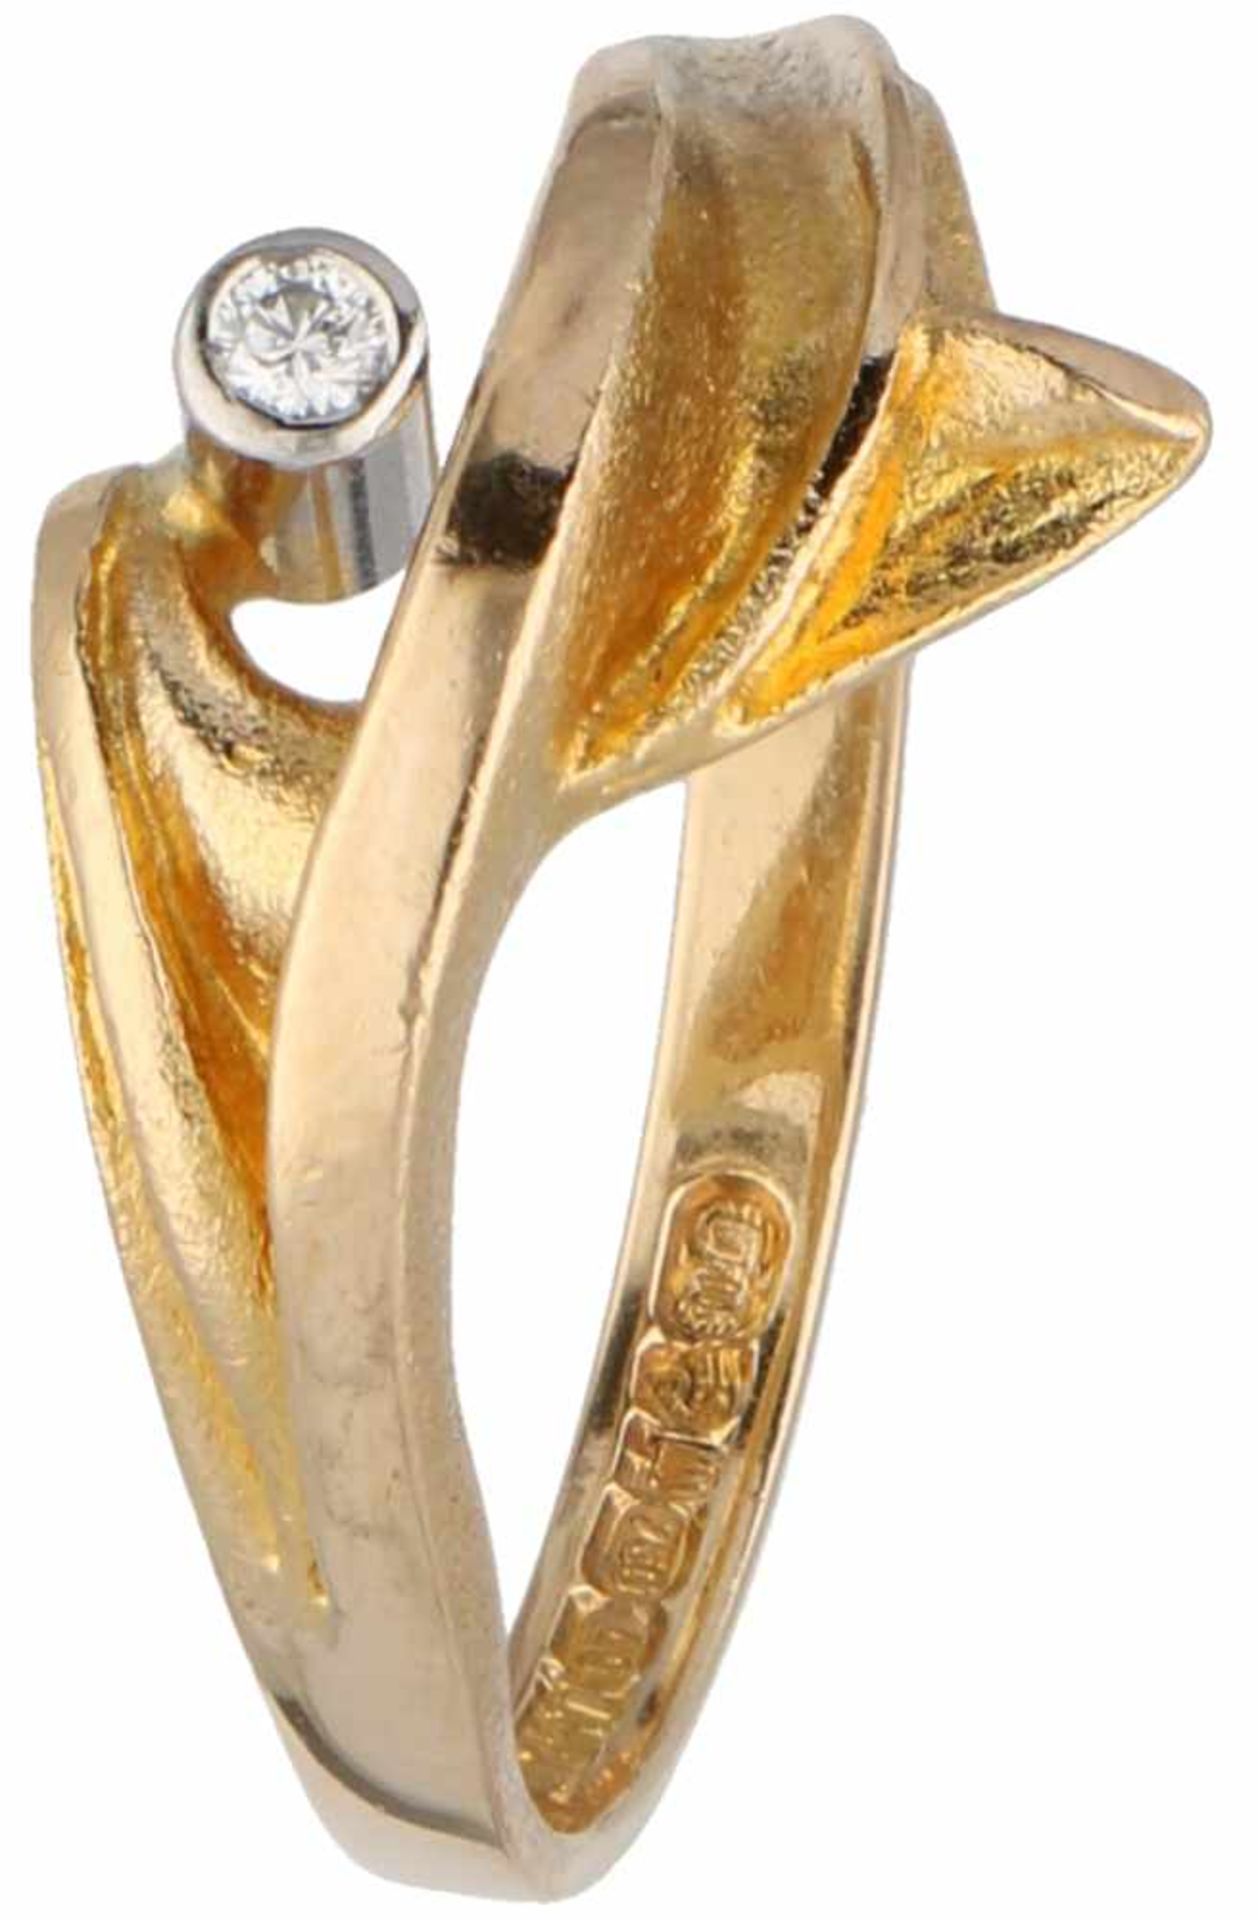 Geelgouden Lapponia ring, ca. 0.02 ct. diamant - 18 kt.1 Briljant geslepen diamant (ca. 0.02 ct.) in